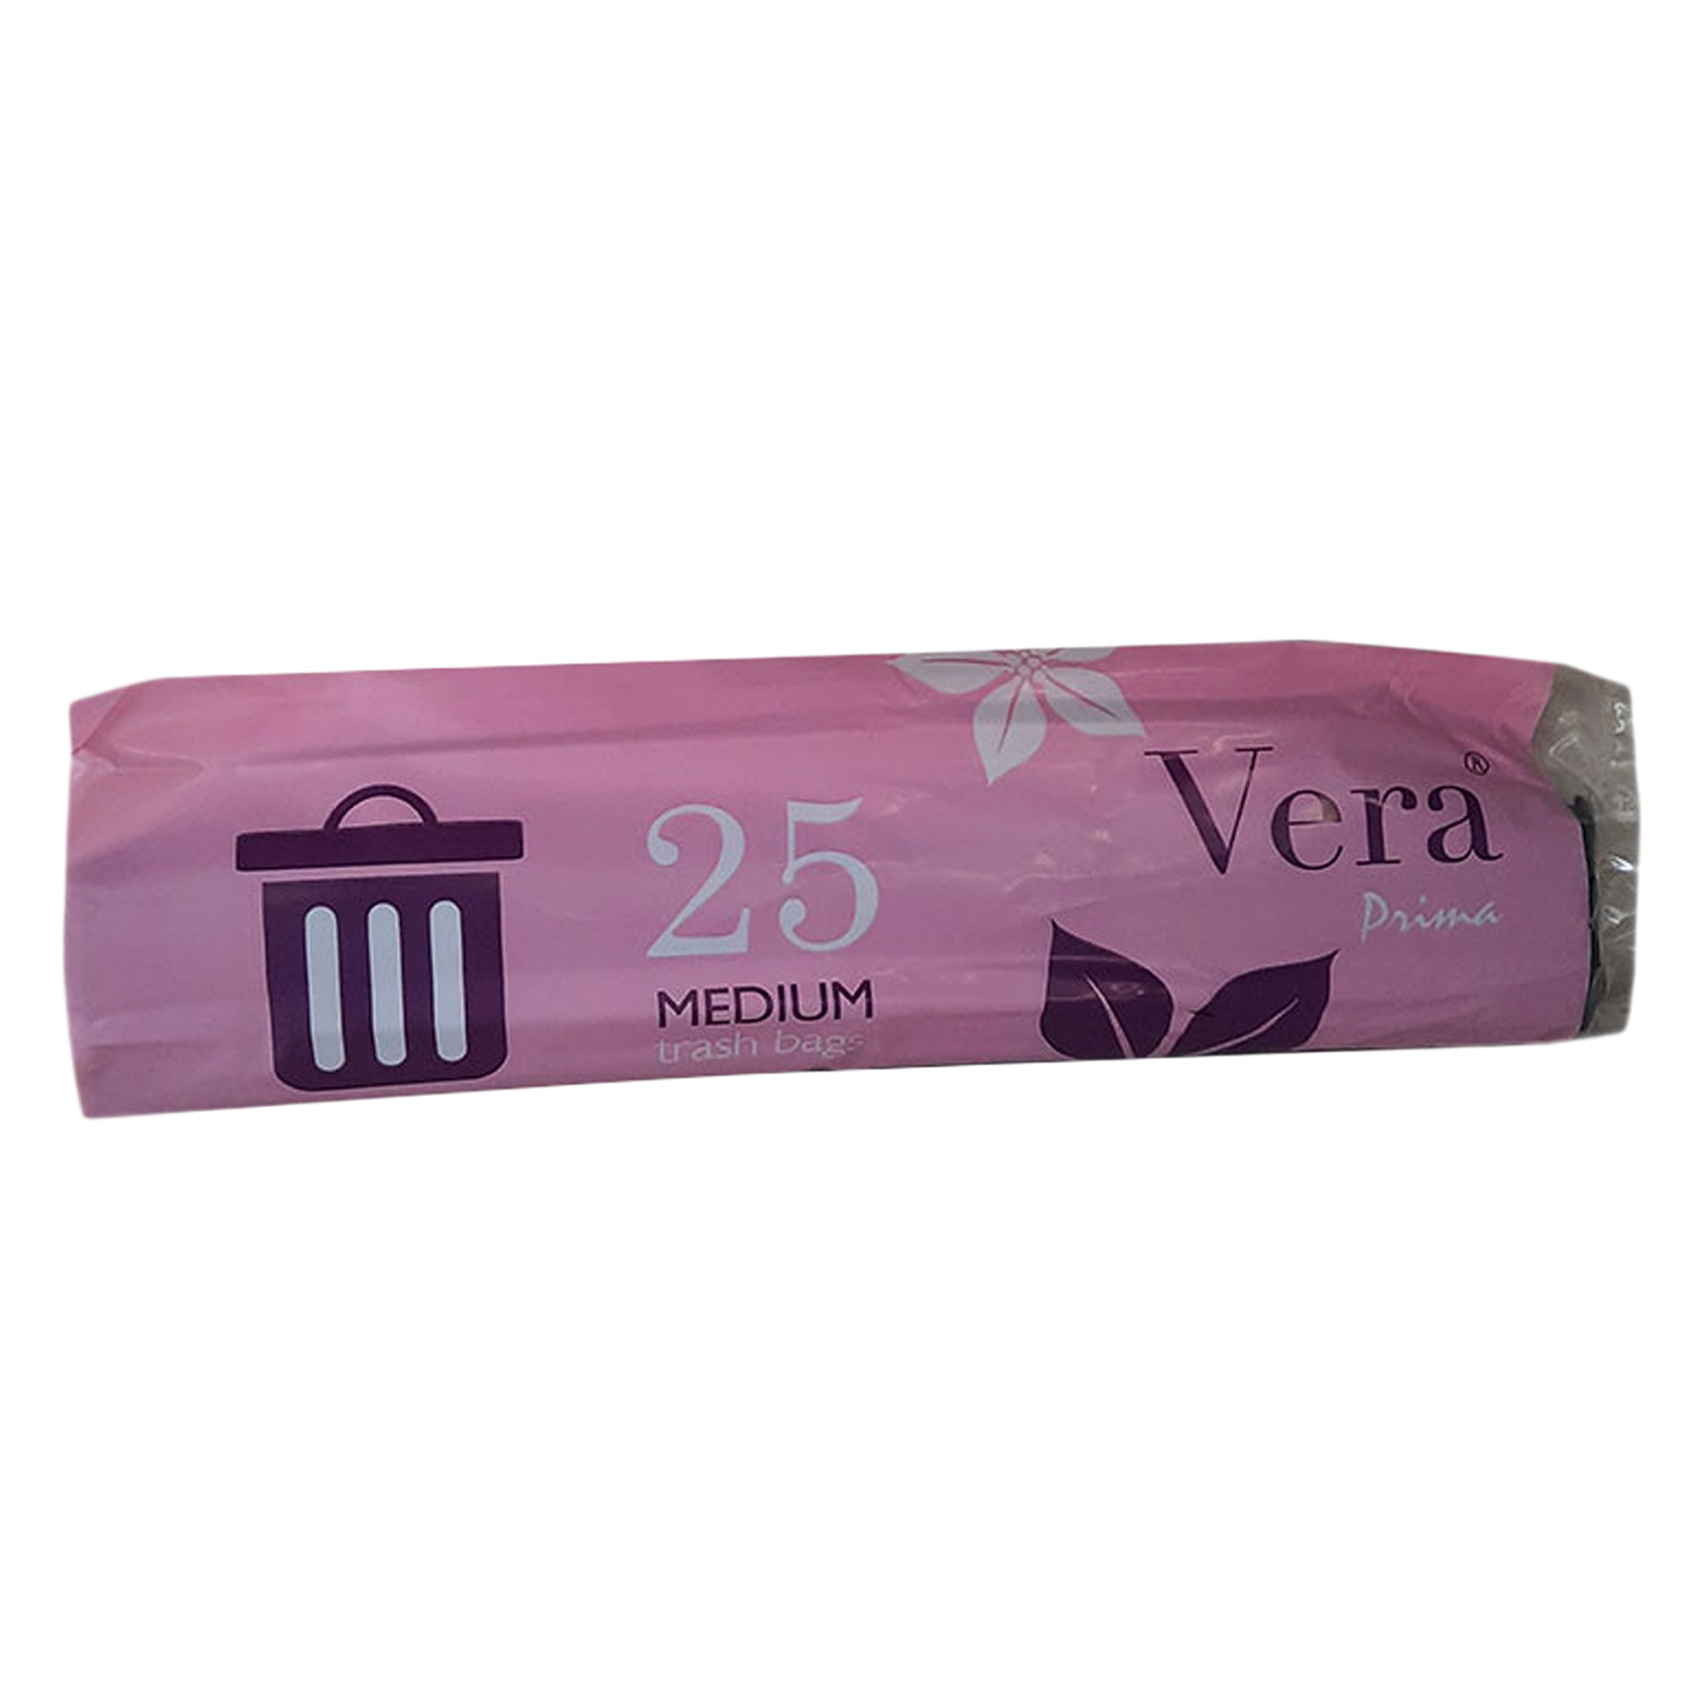 Vera Prima Trash Bags Medium 25 Count